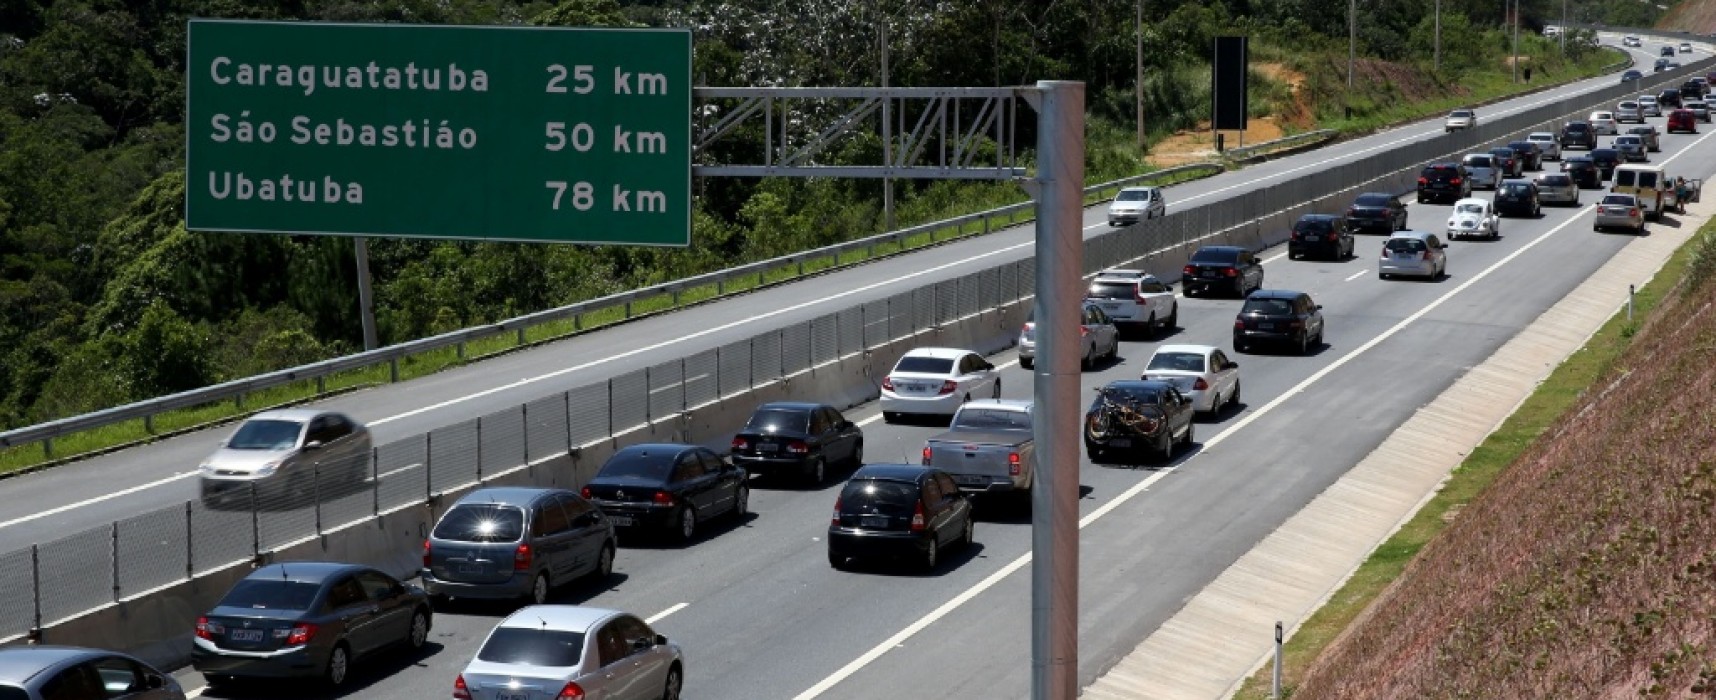 Começa Operação Verão nas rodovias concedidas do Estado de São Paulo